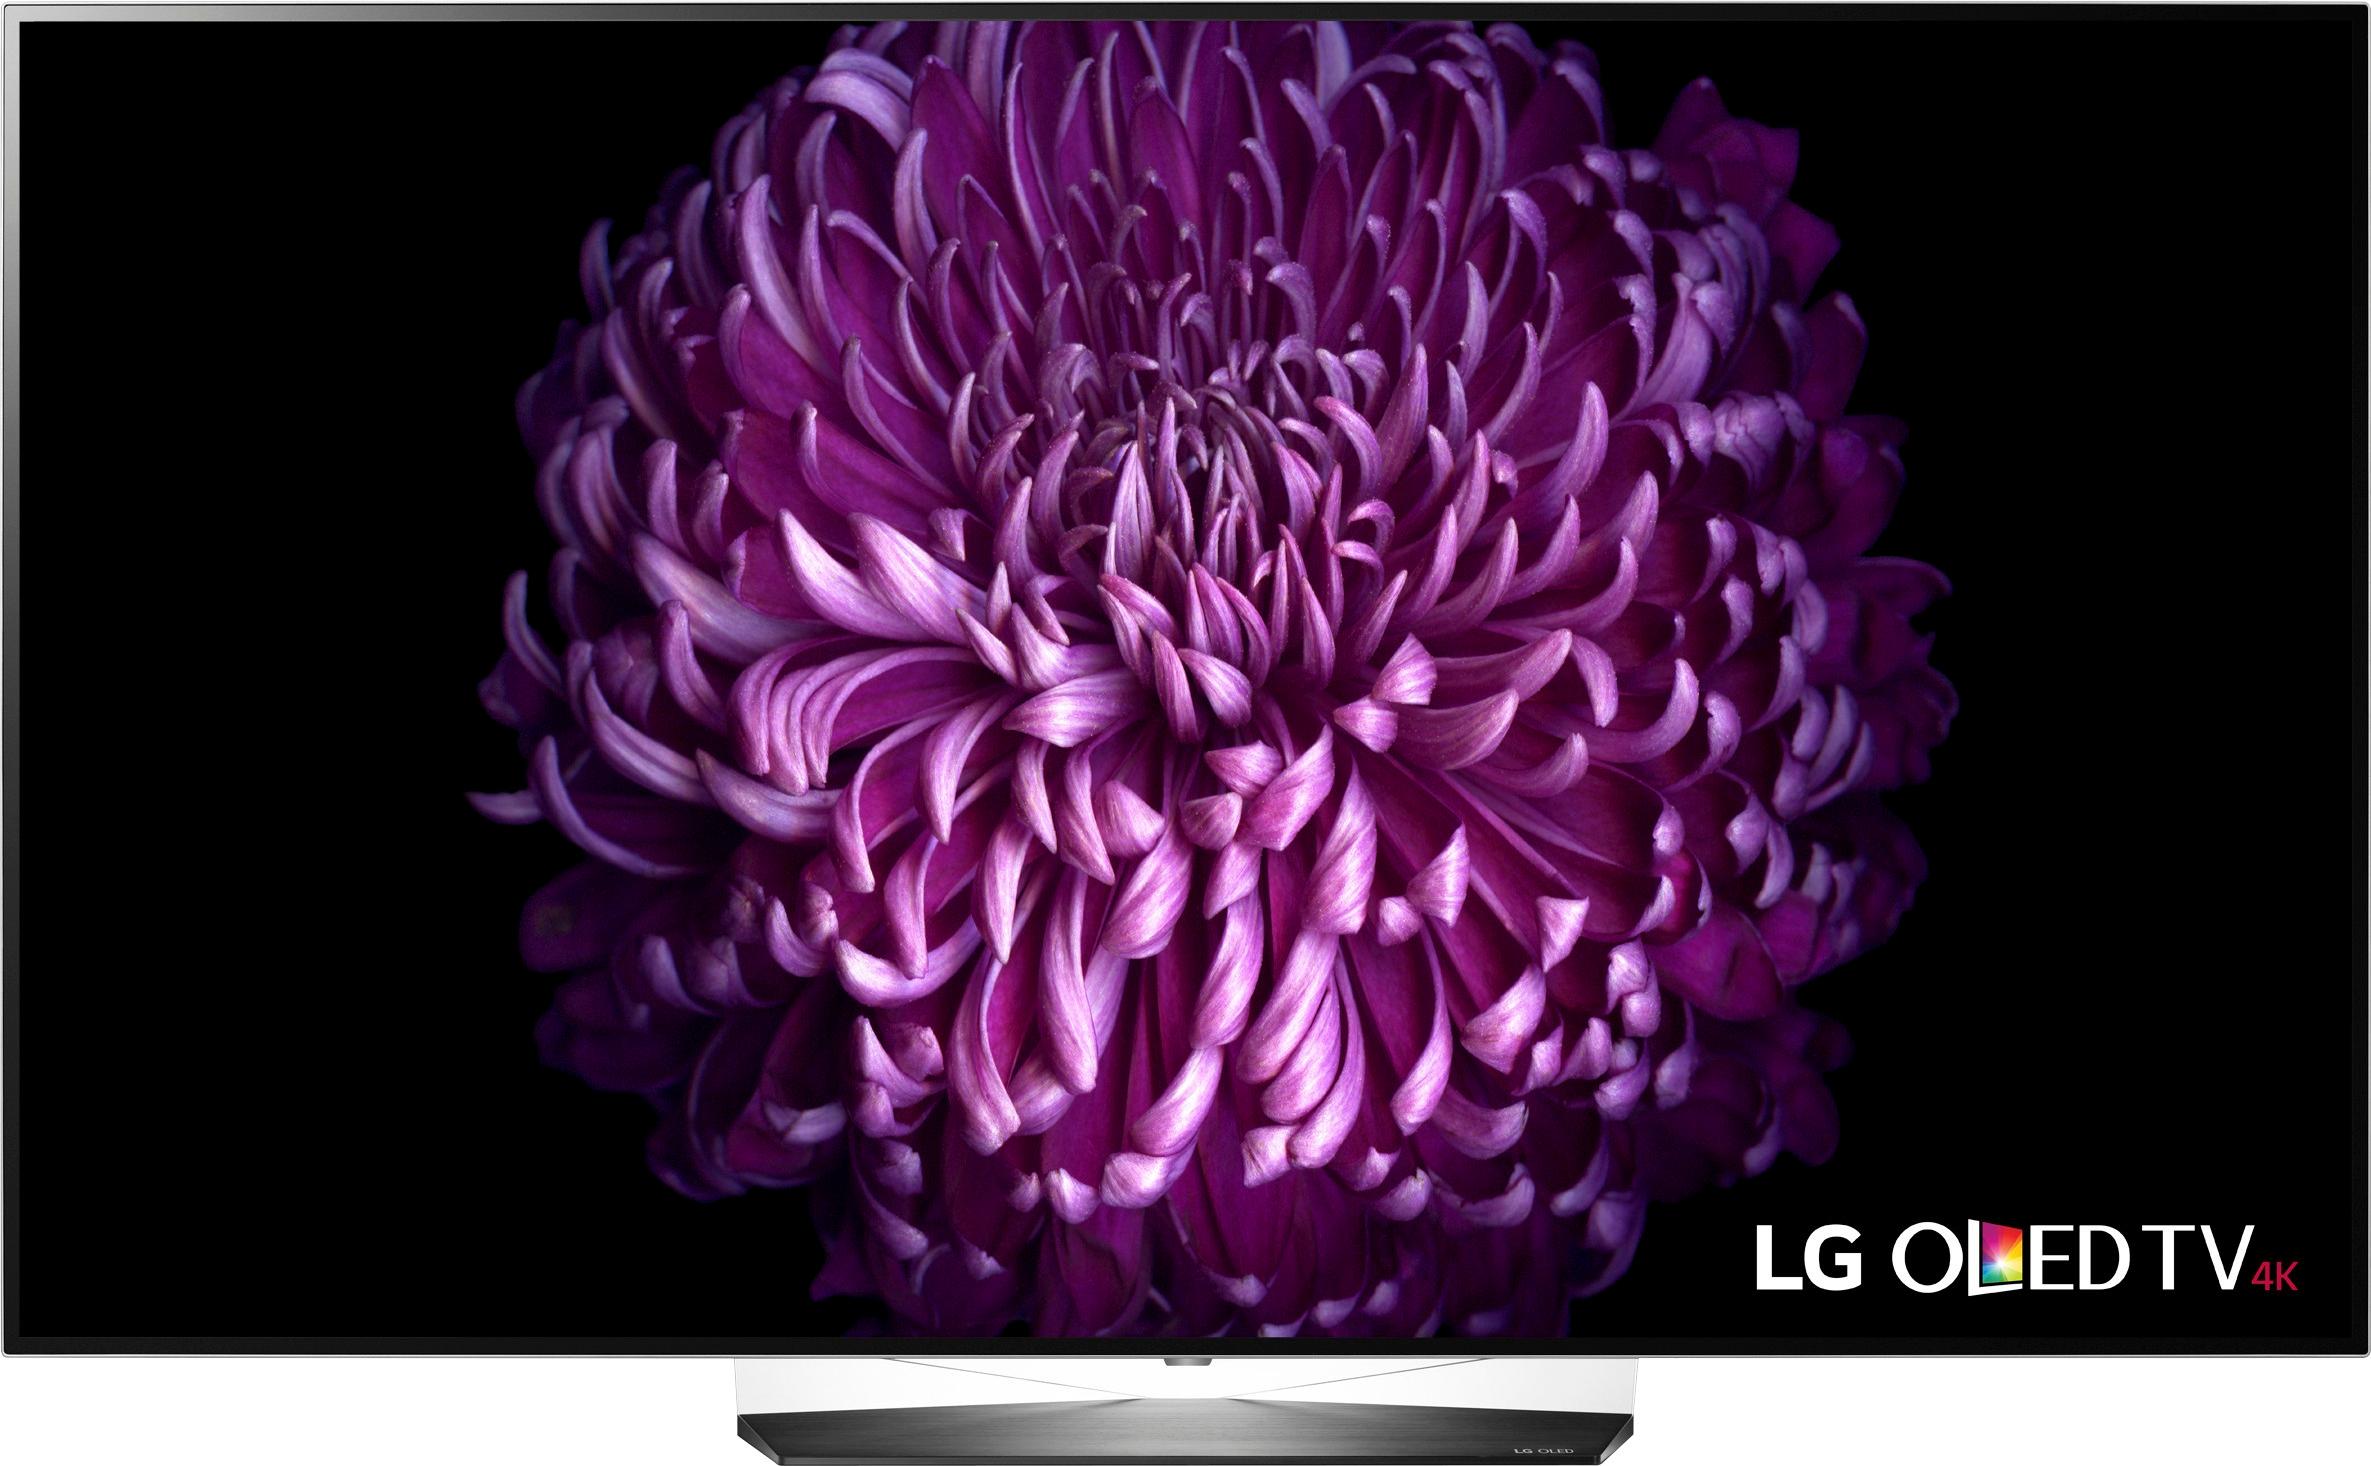 LG OLED65B7A: B7A 65 Inch Class OLED 4K HDR Smart TV